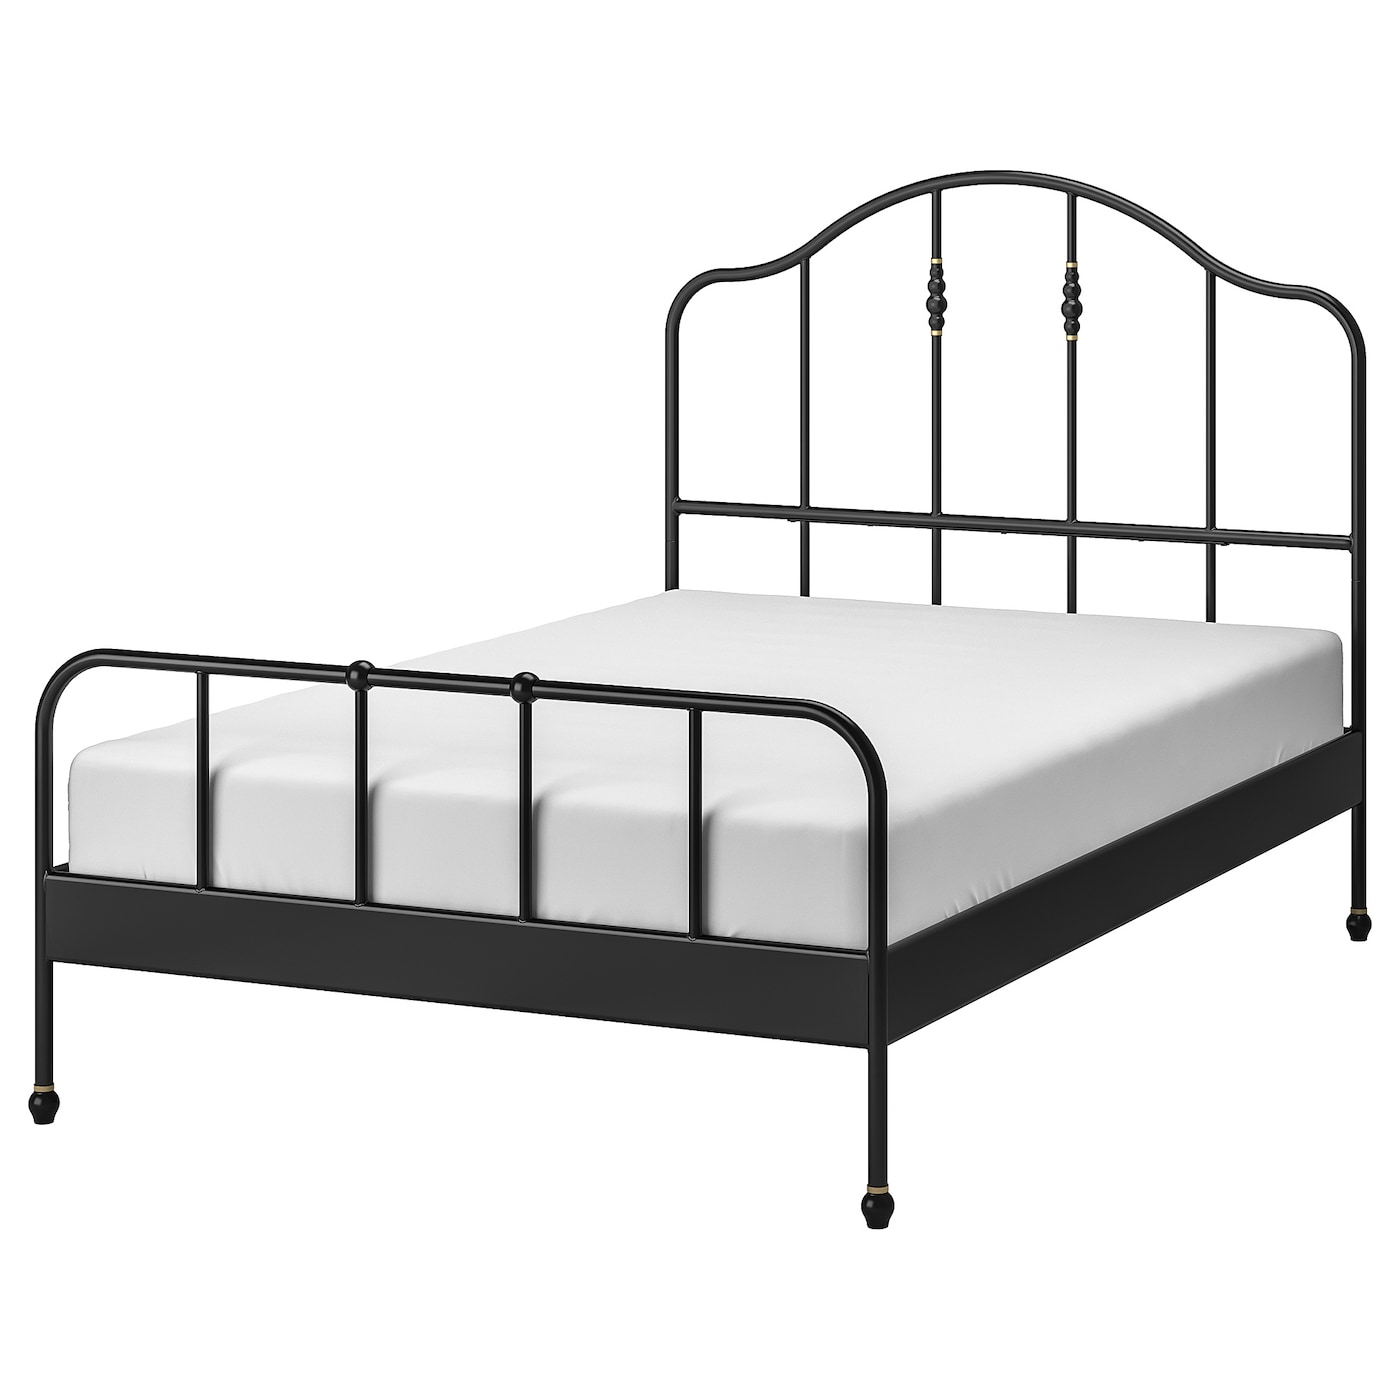 Двуспальная кровать - IKEA SAGSTUA/LÖNSET/LONSET, 200х140 см, черный, САГСТУА/ЛОНСЕТ ИКЕА